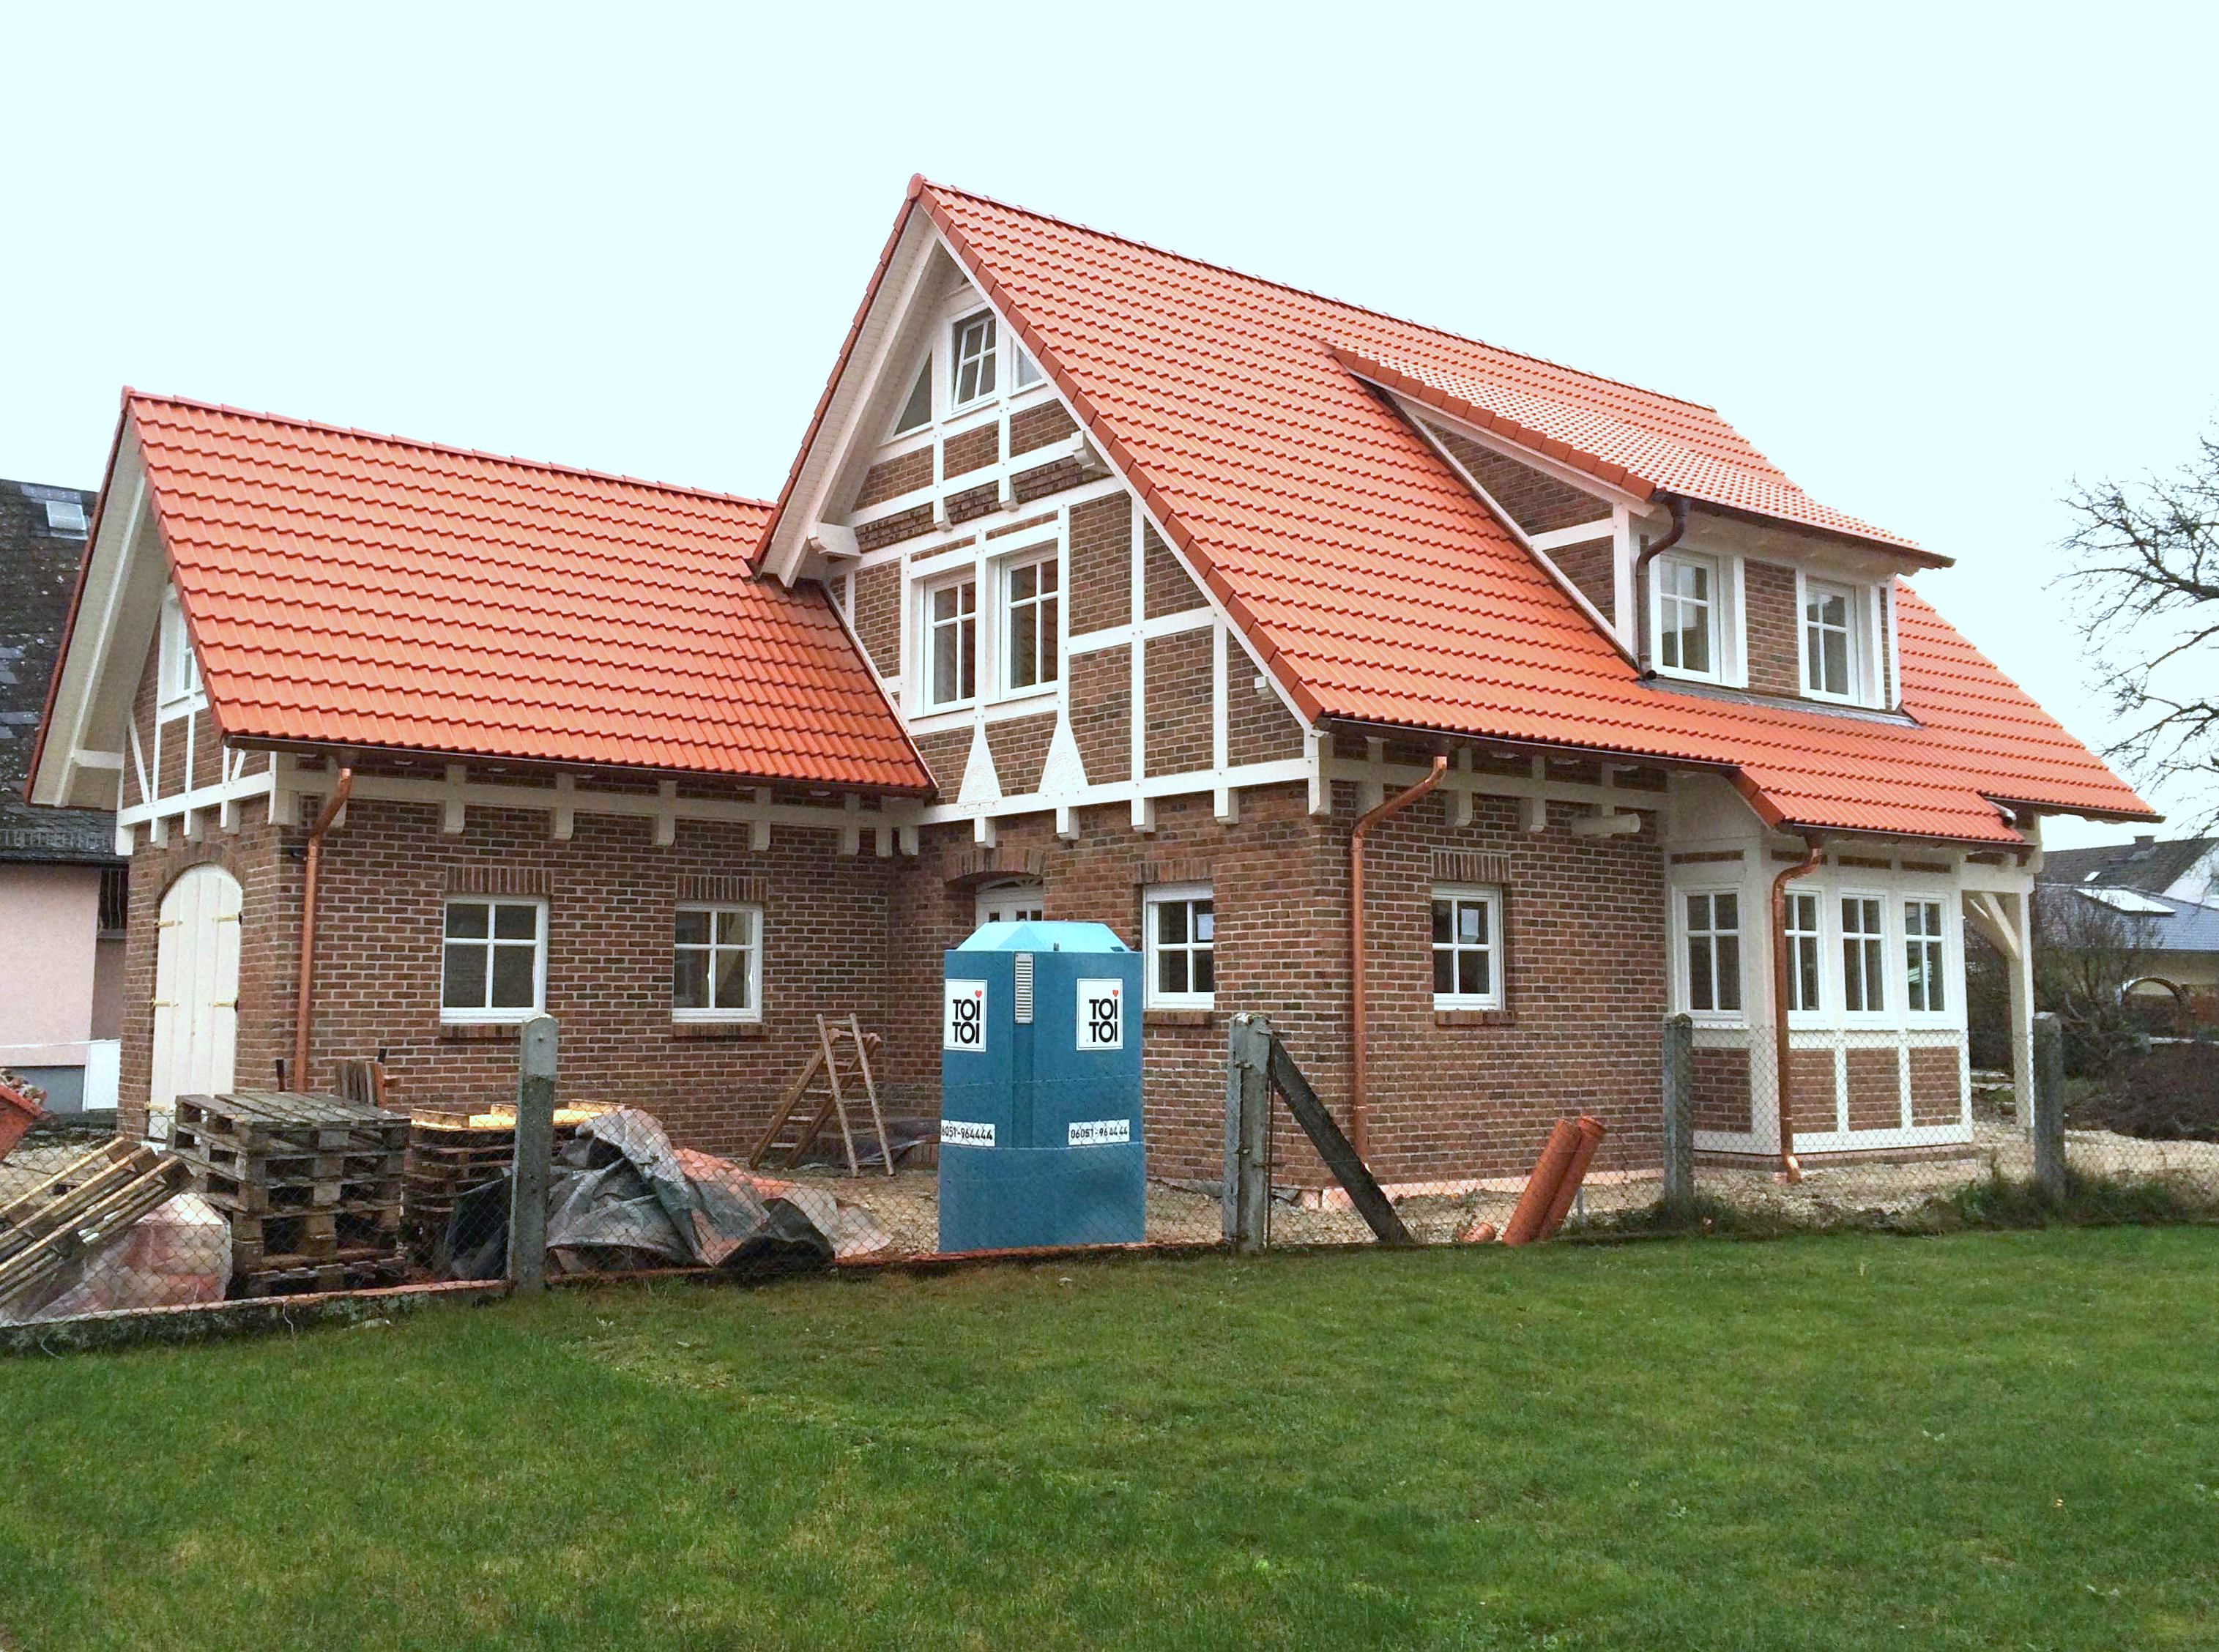 Fachwerkhaus in Rodheim v.d.H. - Baustelle am 05.12.2015